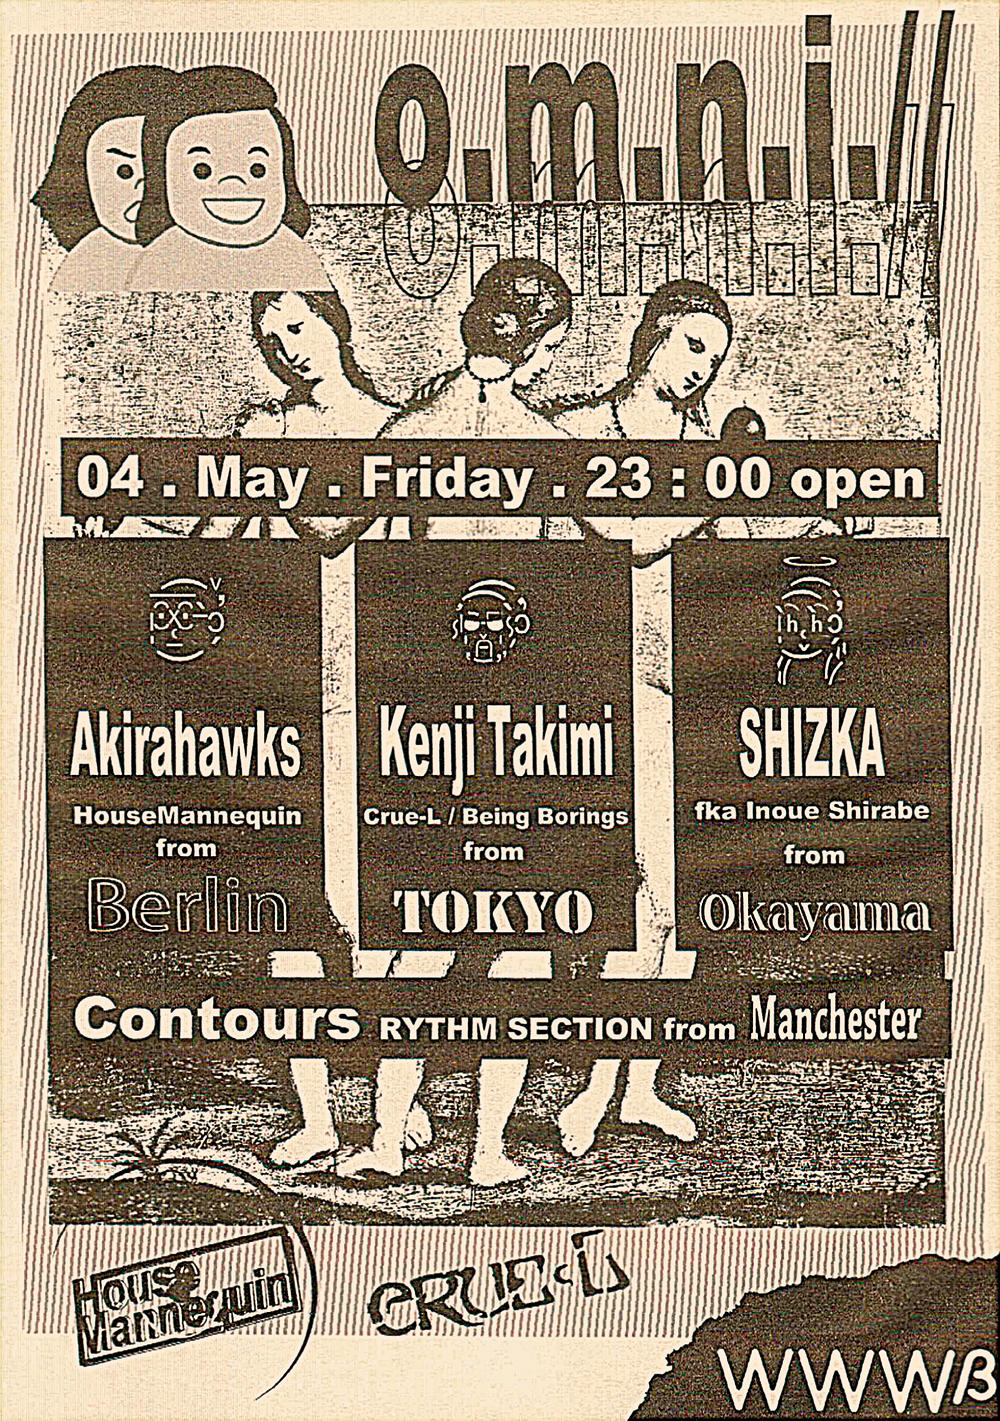 Akirahawks / KENJI TAKIMI / SHIZKA / Contours / DJ Honeypants / ippei / moriura